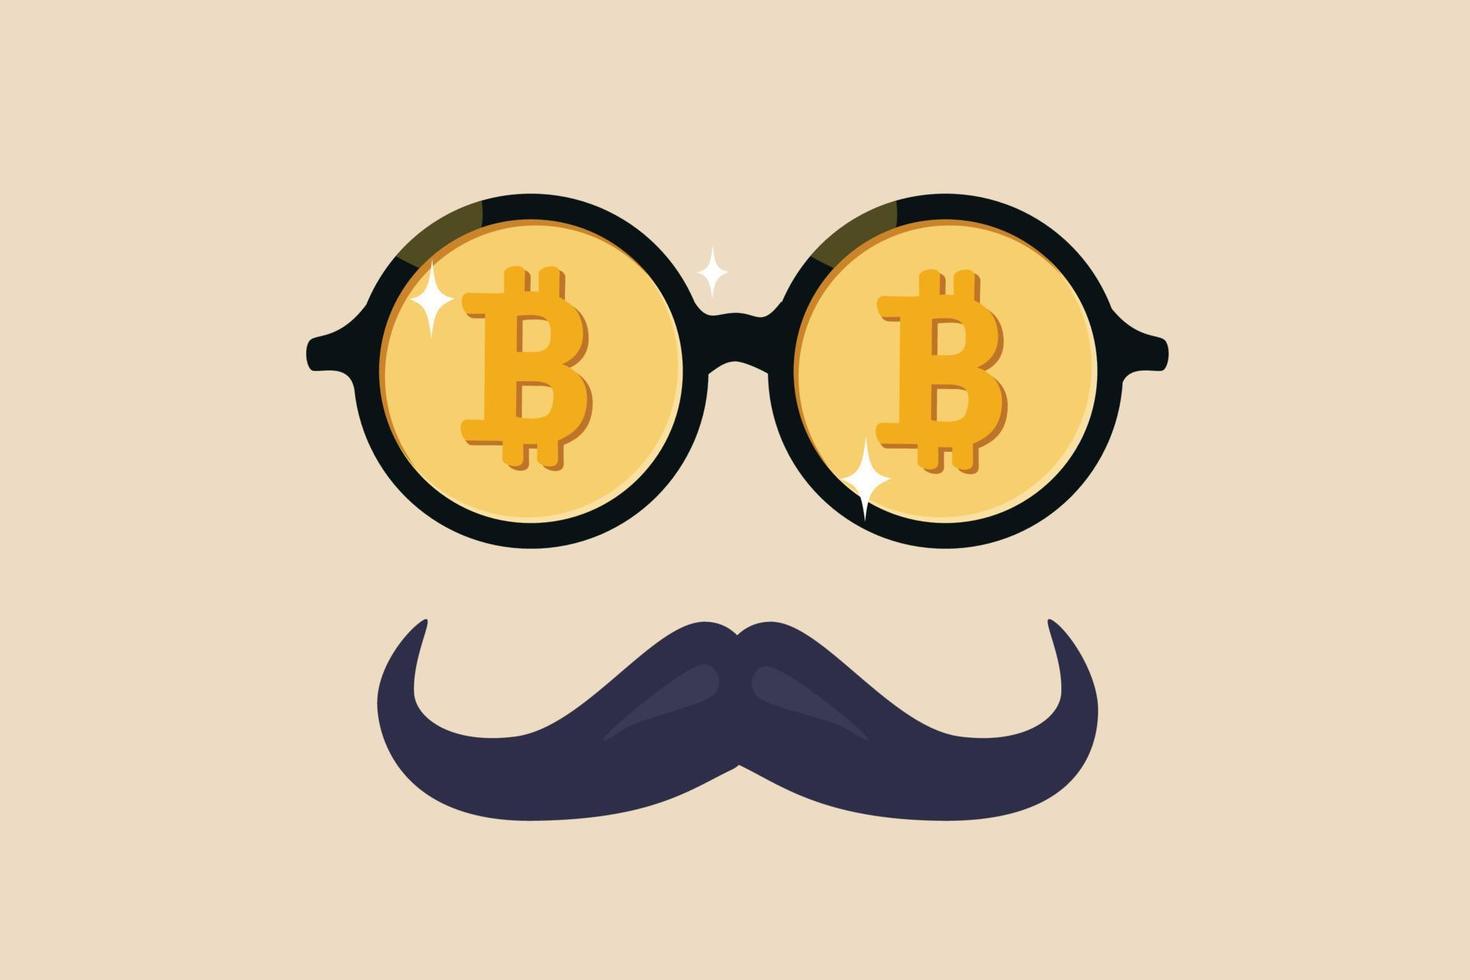 baleia bitcoin ou anônimo que é rico em criptomoeda bitcoin, guru da criptomoeda ou investidor de sucesso sem conceito de identidade, óculos de nerd chiques com o precioso símbolo bitcoin e bigode. vetor